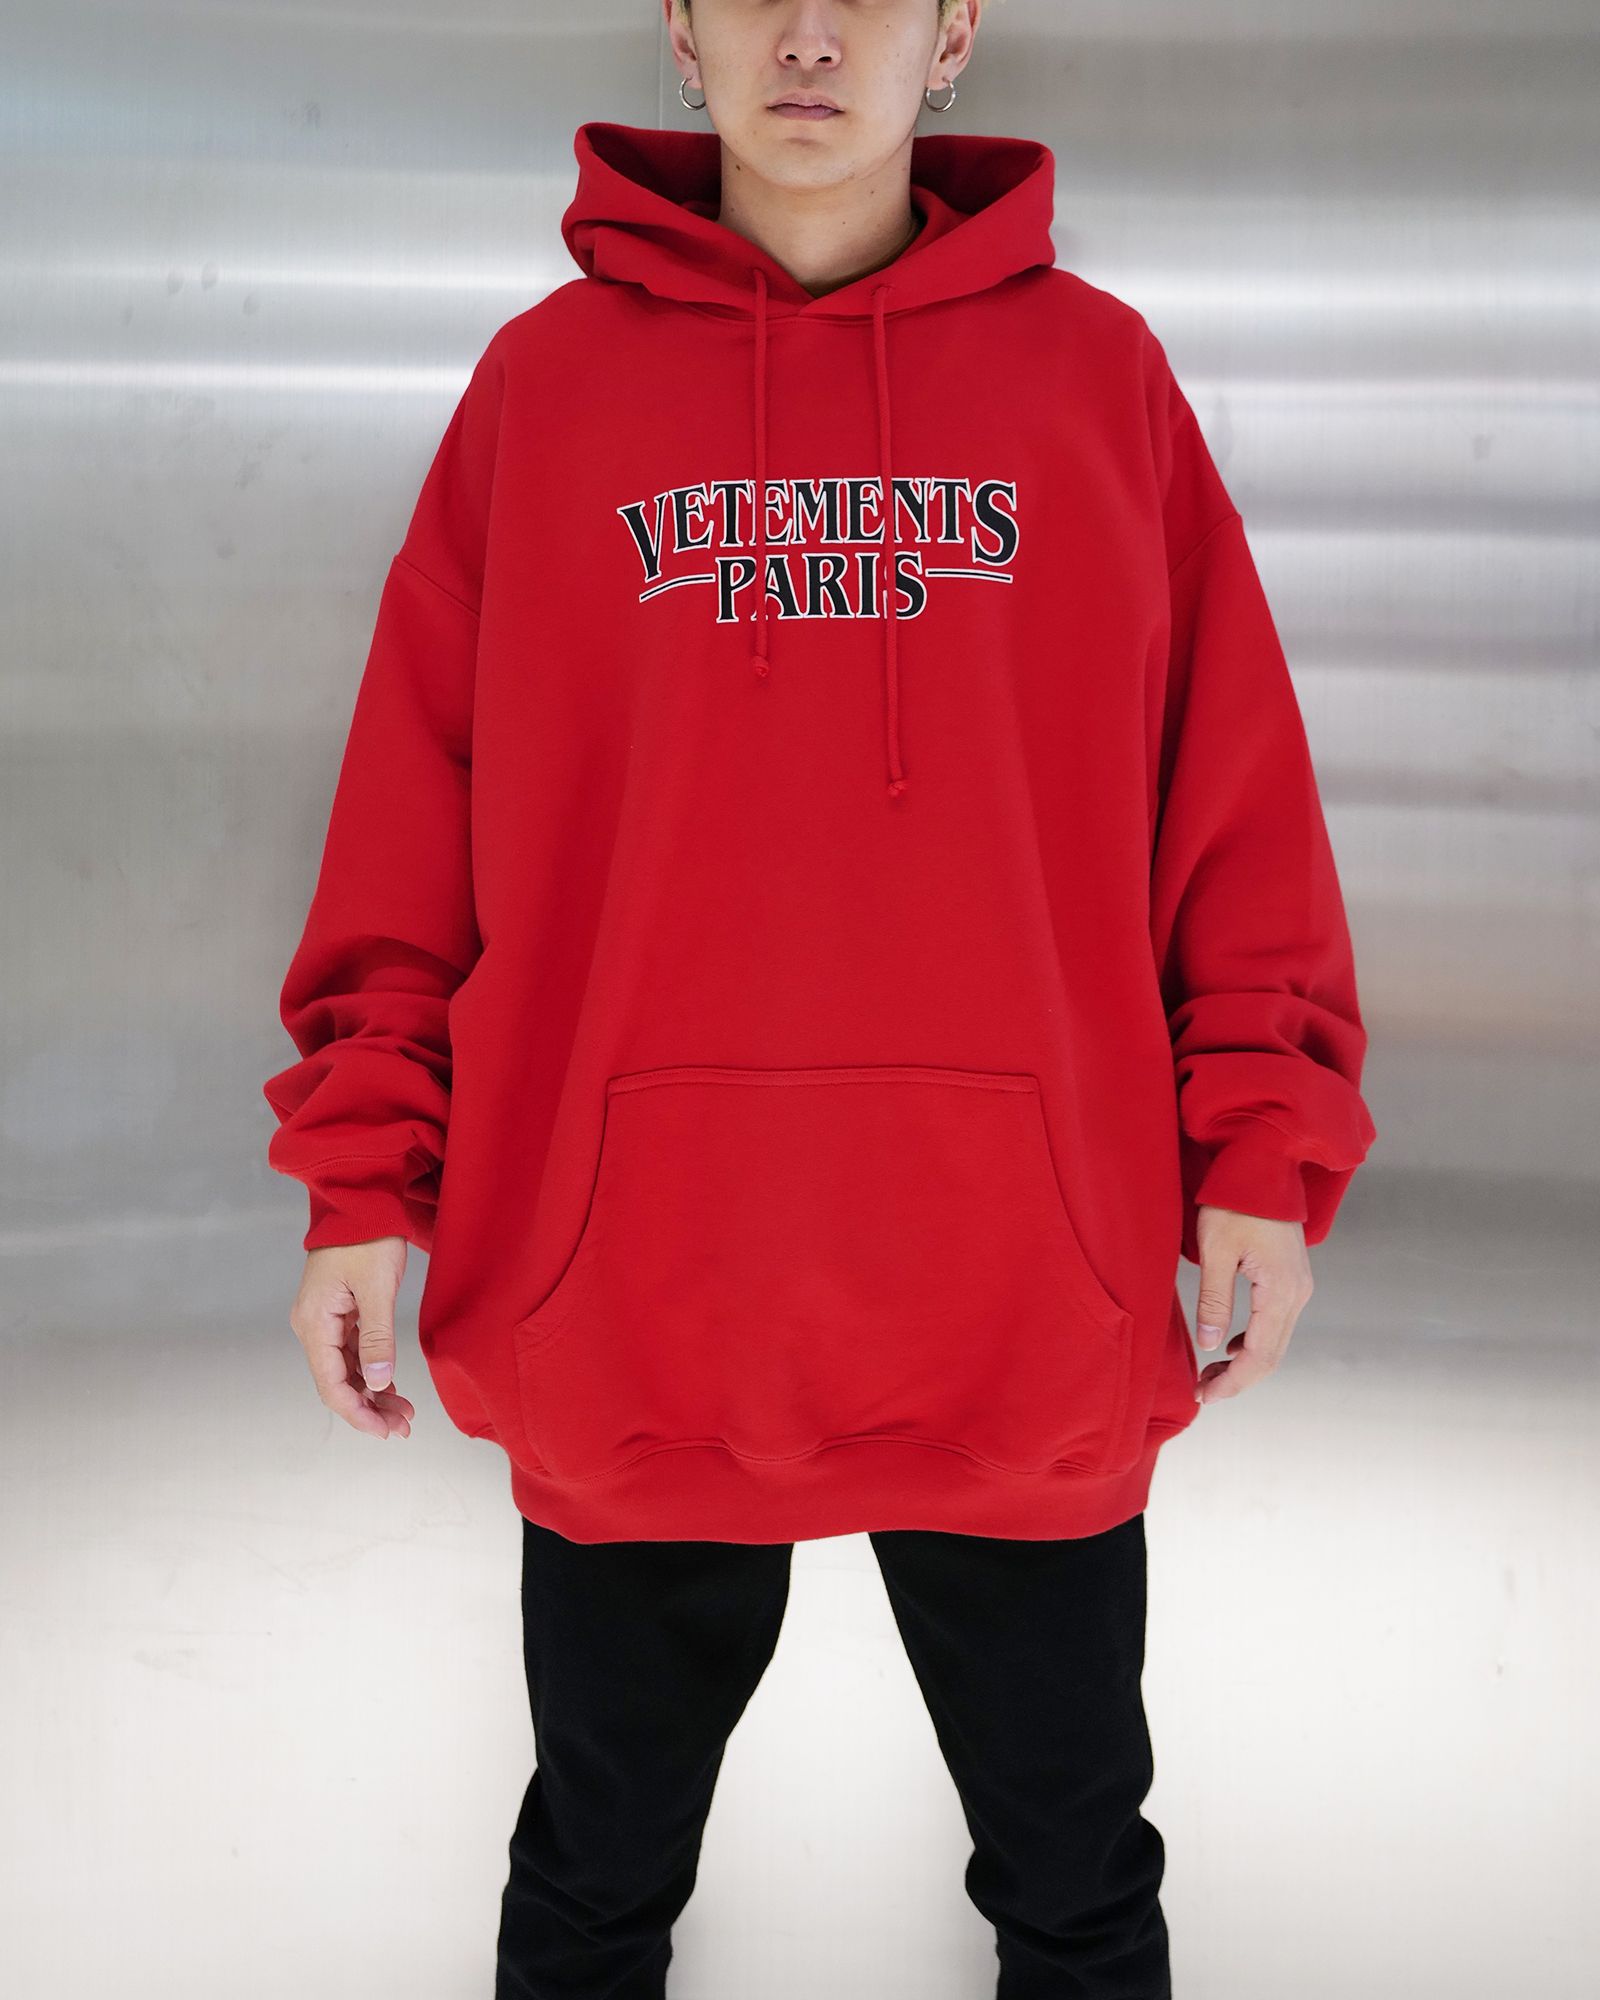 ヴェトモン/Vetements paris logo hoodie/プルオーバーパーカー/Red - S